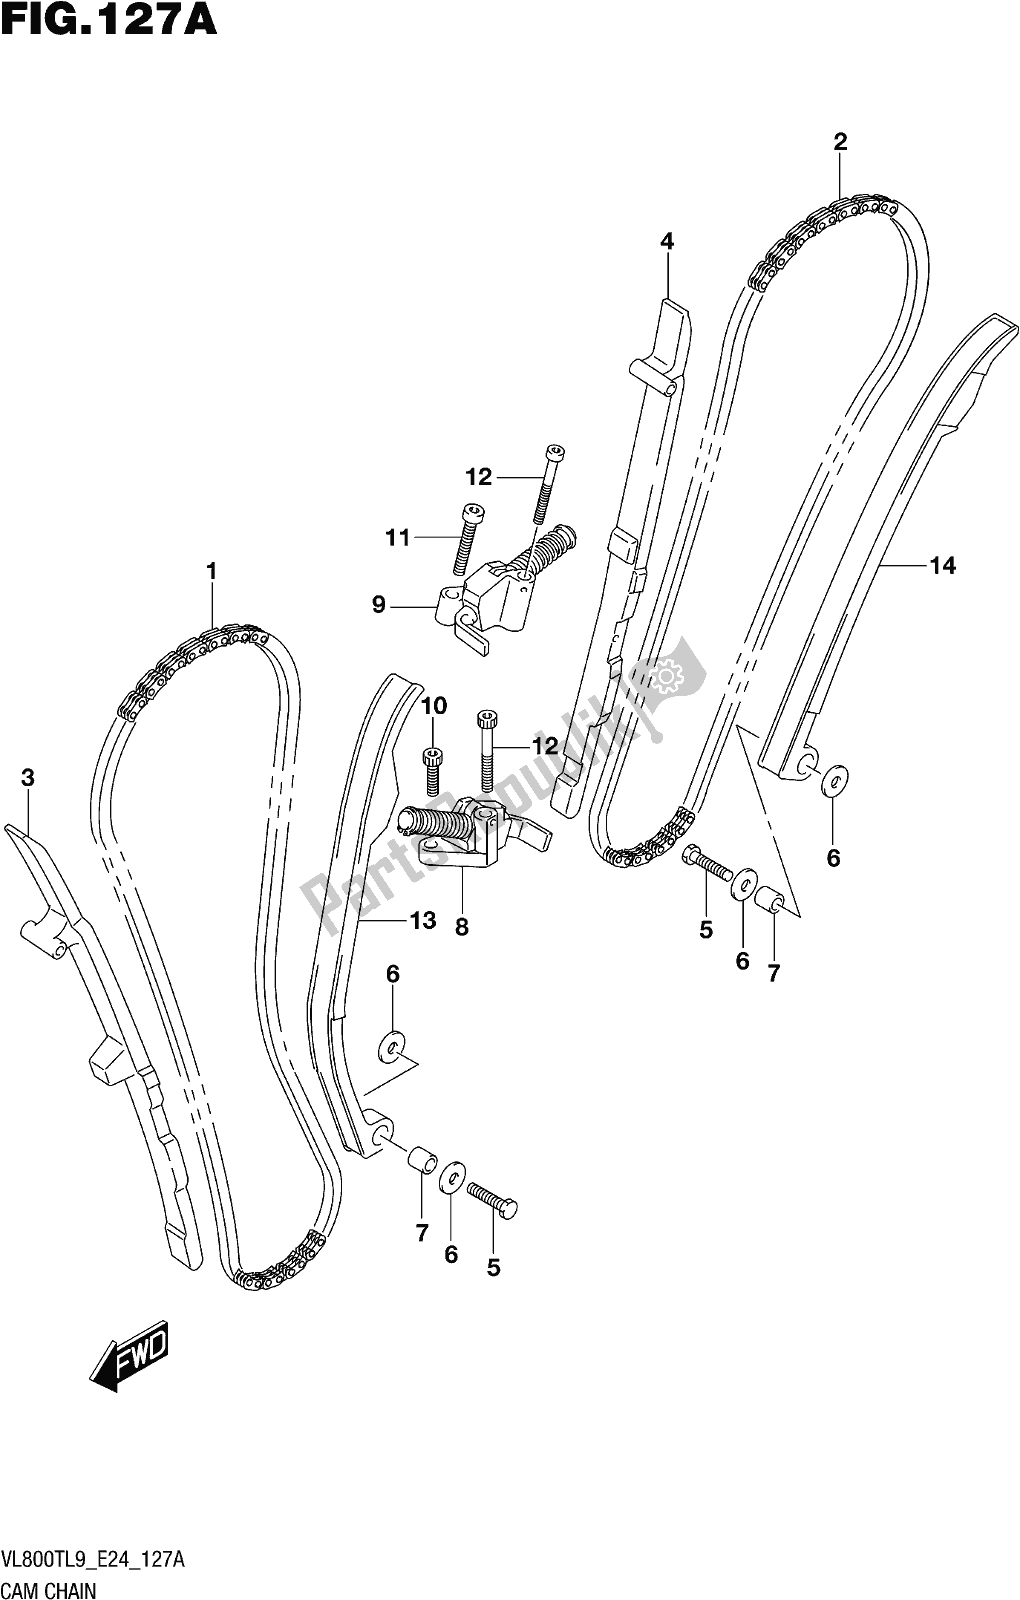 Alle onderdelen voor de Fig. 127a Cam Chain van de Suzuki VL 800T 2019